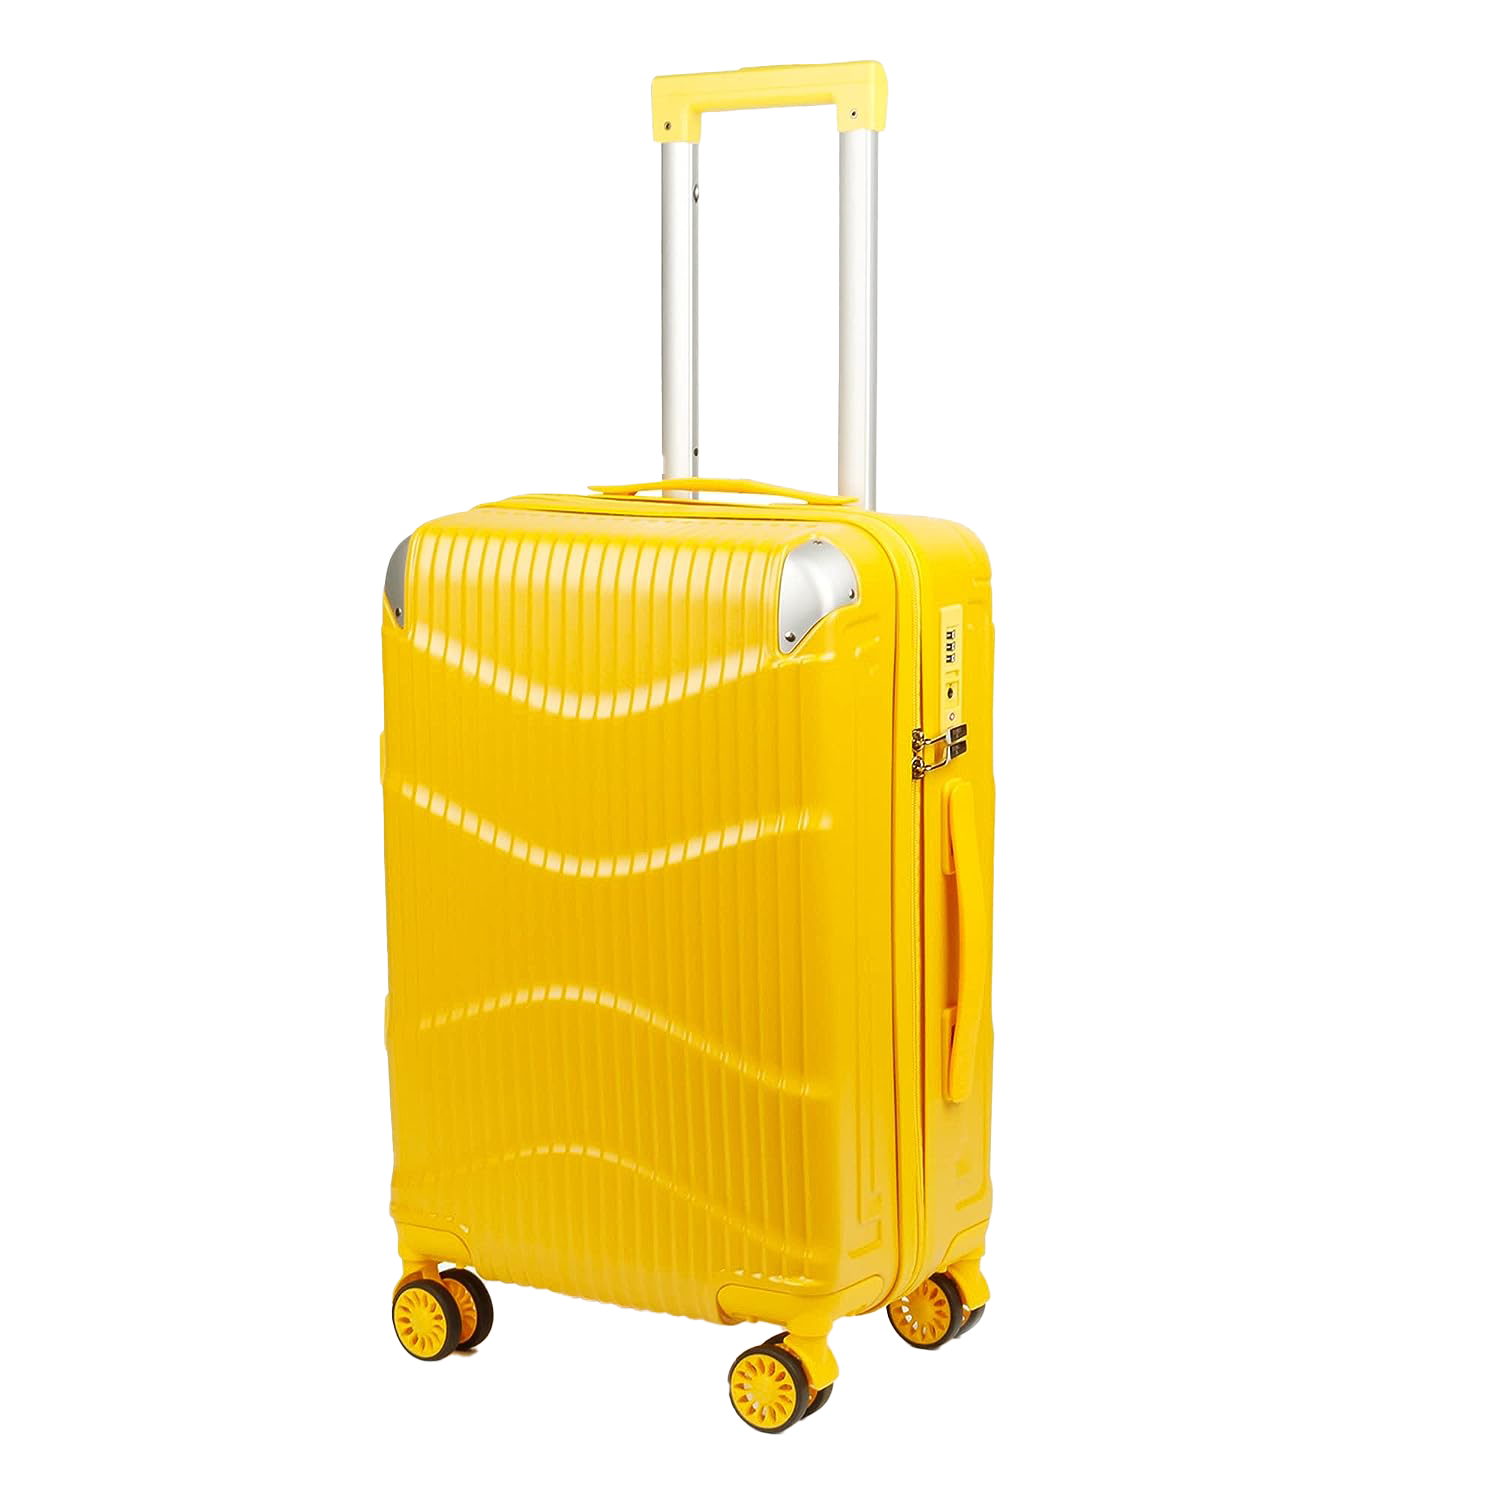 clownfish ballard suitcase